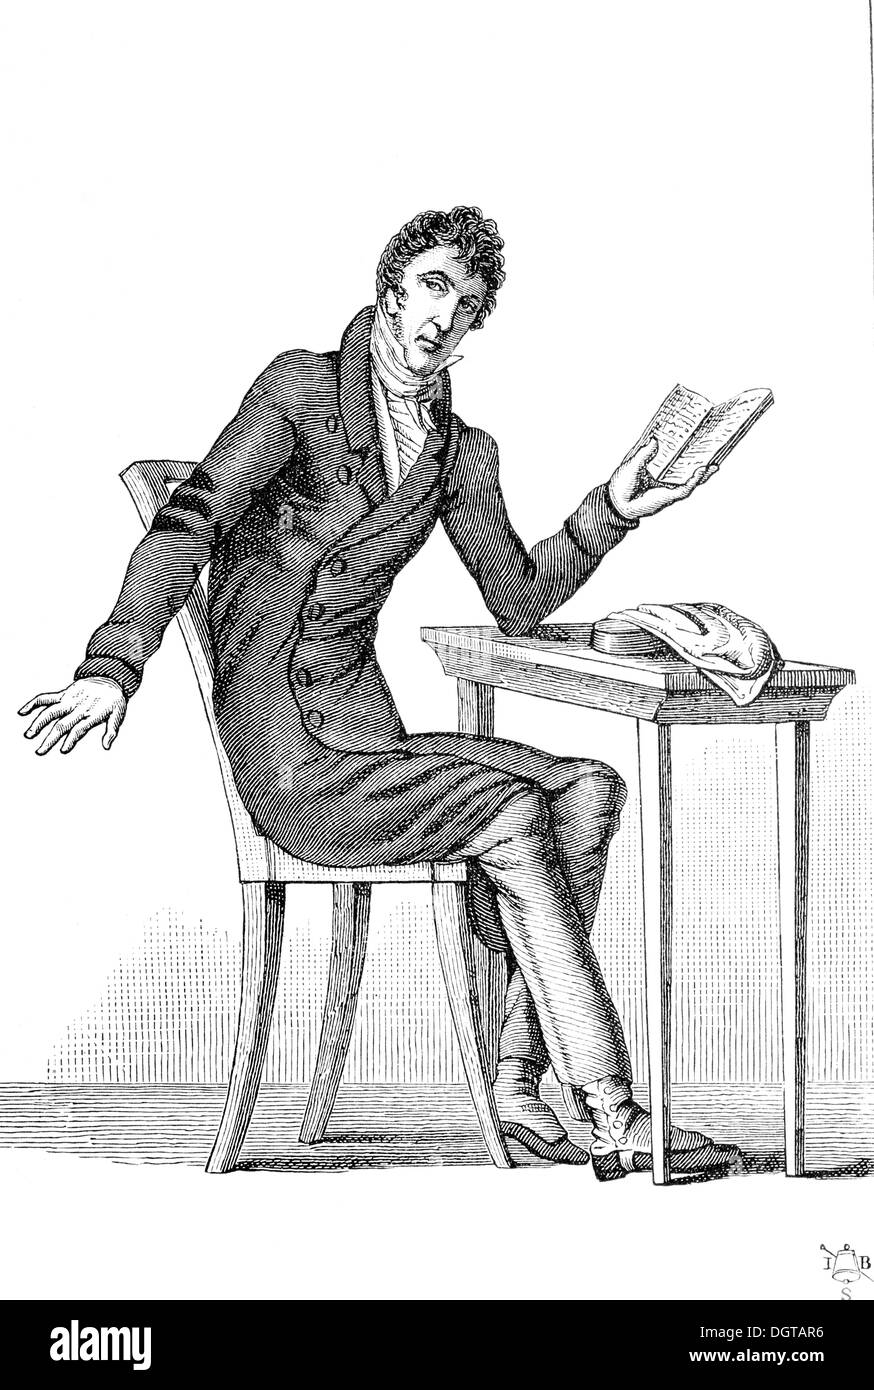 Zacharias Werner, historic illustration from Deutsche Literaturgeschichte, a history of German literature from 1885 Stock Photo